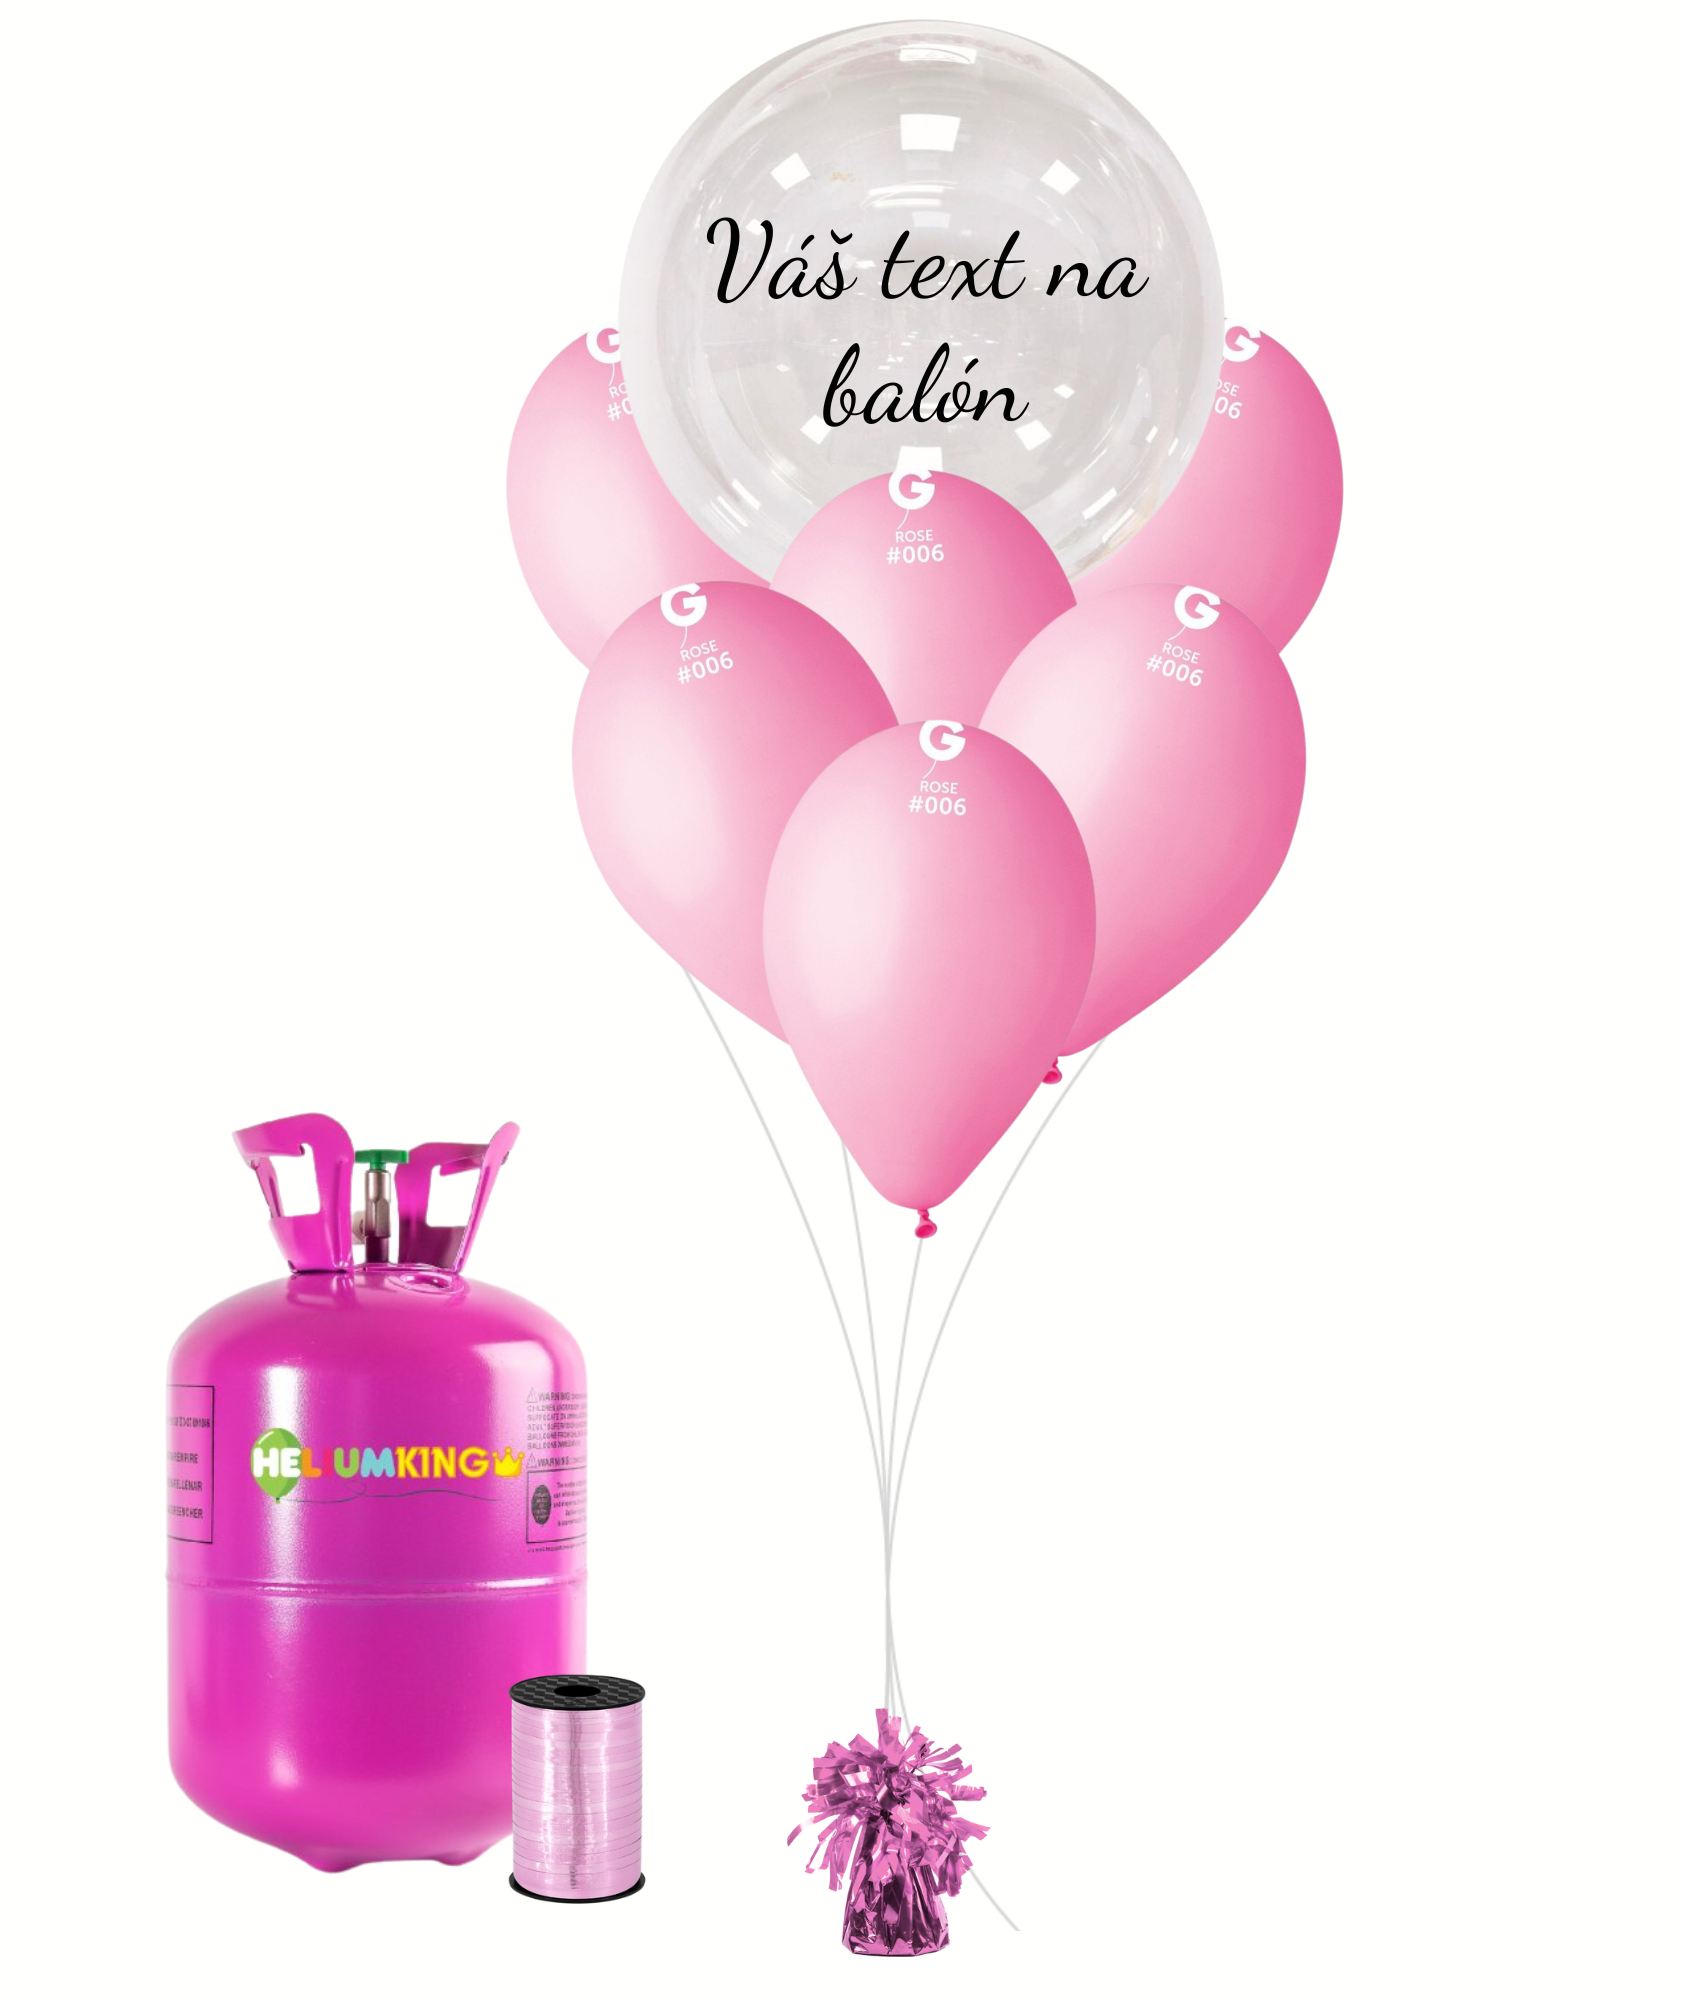 Personal Personalizovaný helium párty set růžový - Průsvitný balón 16 ks